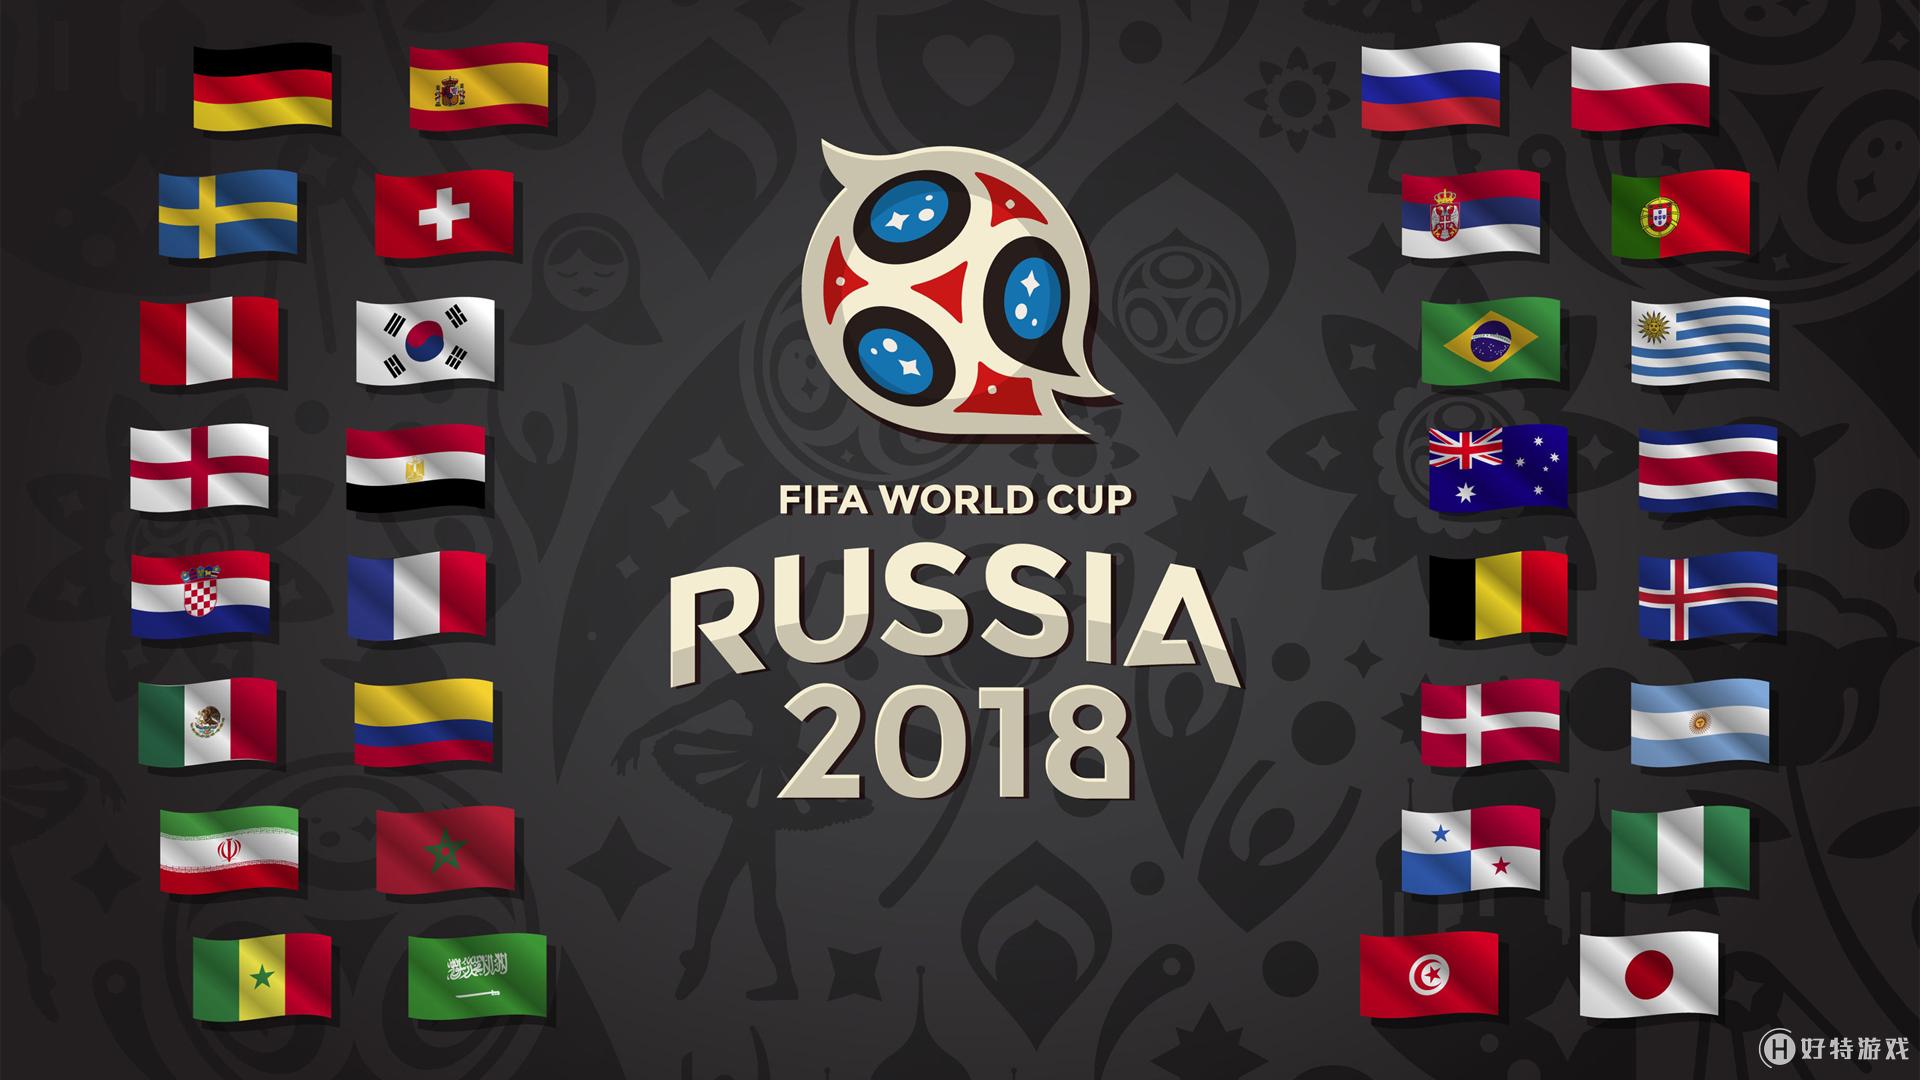 2018世界杯壁纸下载 2018世界杯壁纸高清图片大全